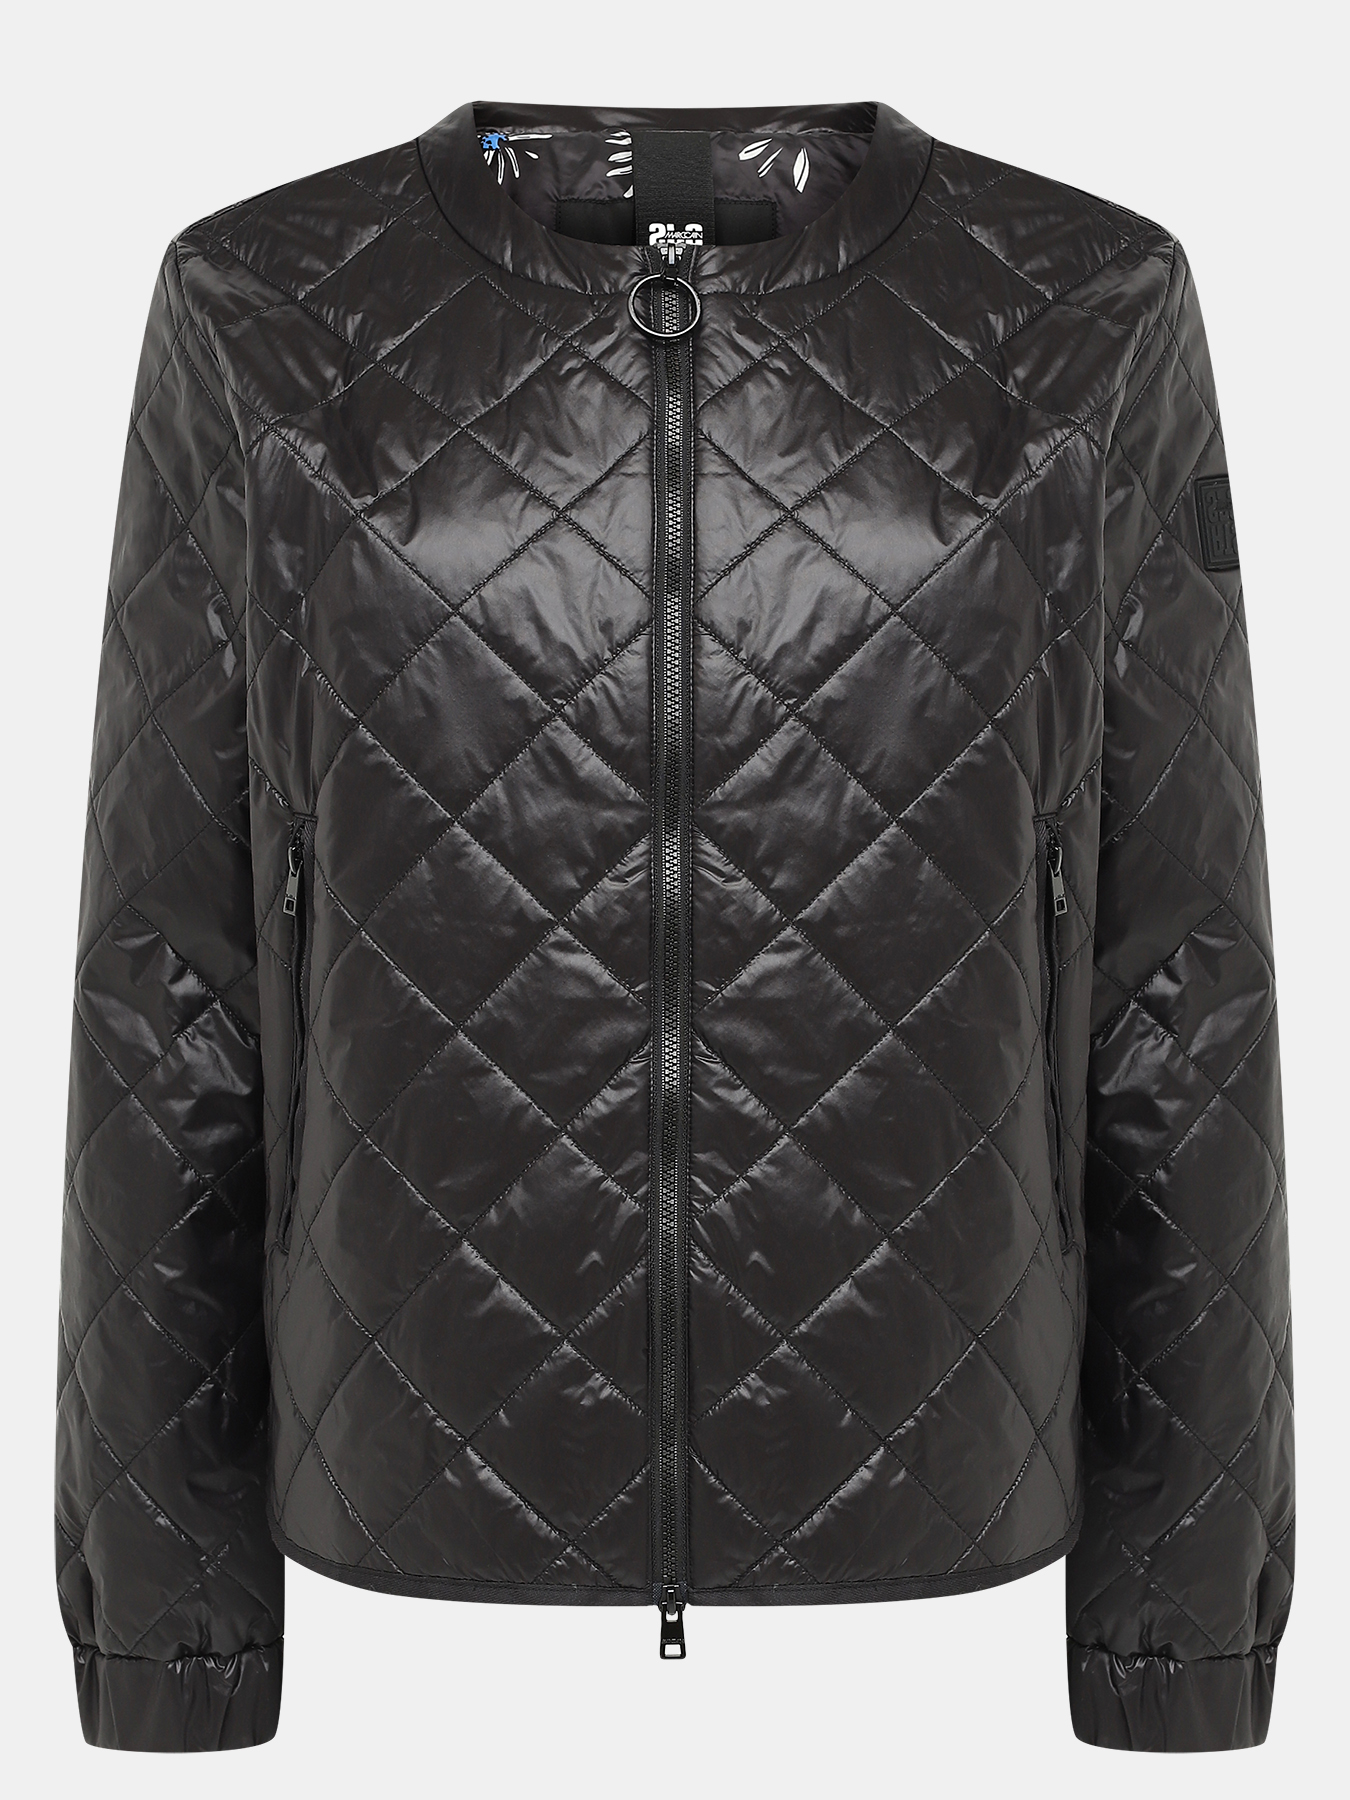 Куртка Marc Cain 438492-003, цвет черный, размер 48